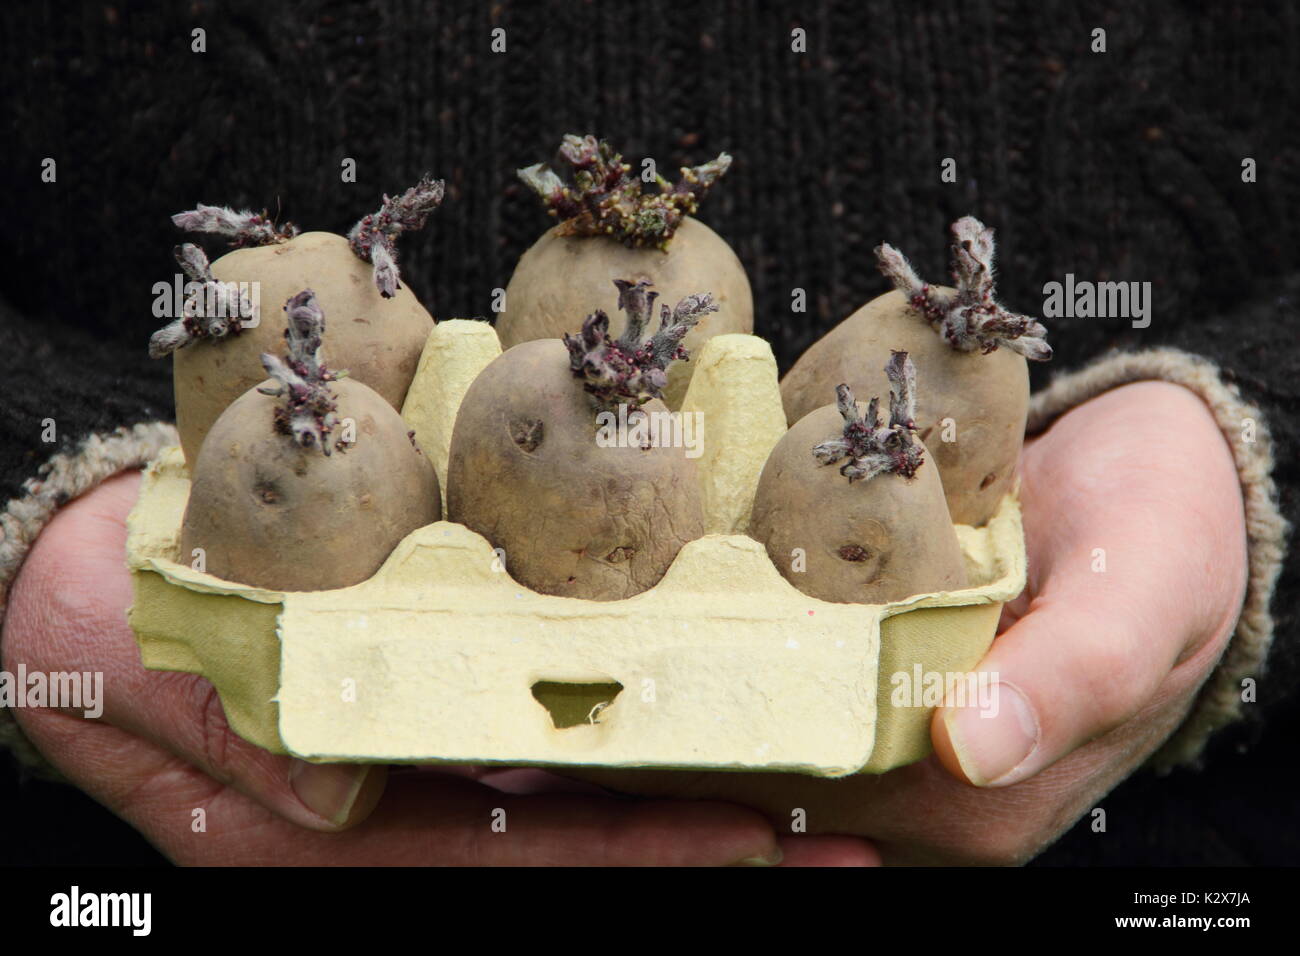 Solanum tuberosum. Les pommes de terre de semence Chitted recylced dans une boîte d'oeufs prêts pour la plantation - printemps, UK Banque D'Images